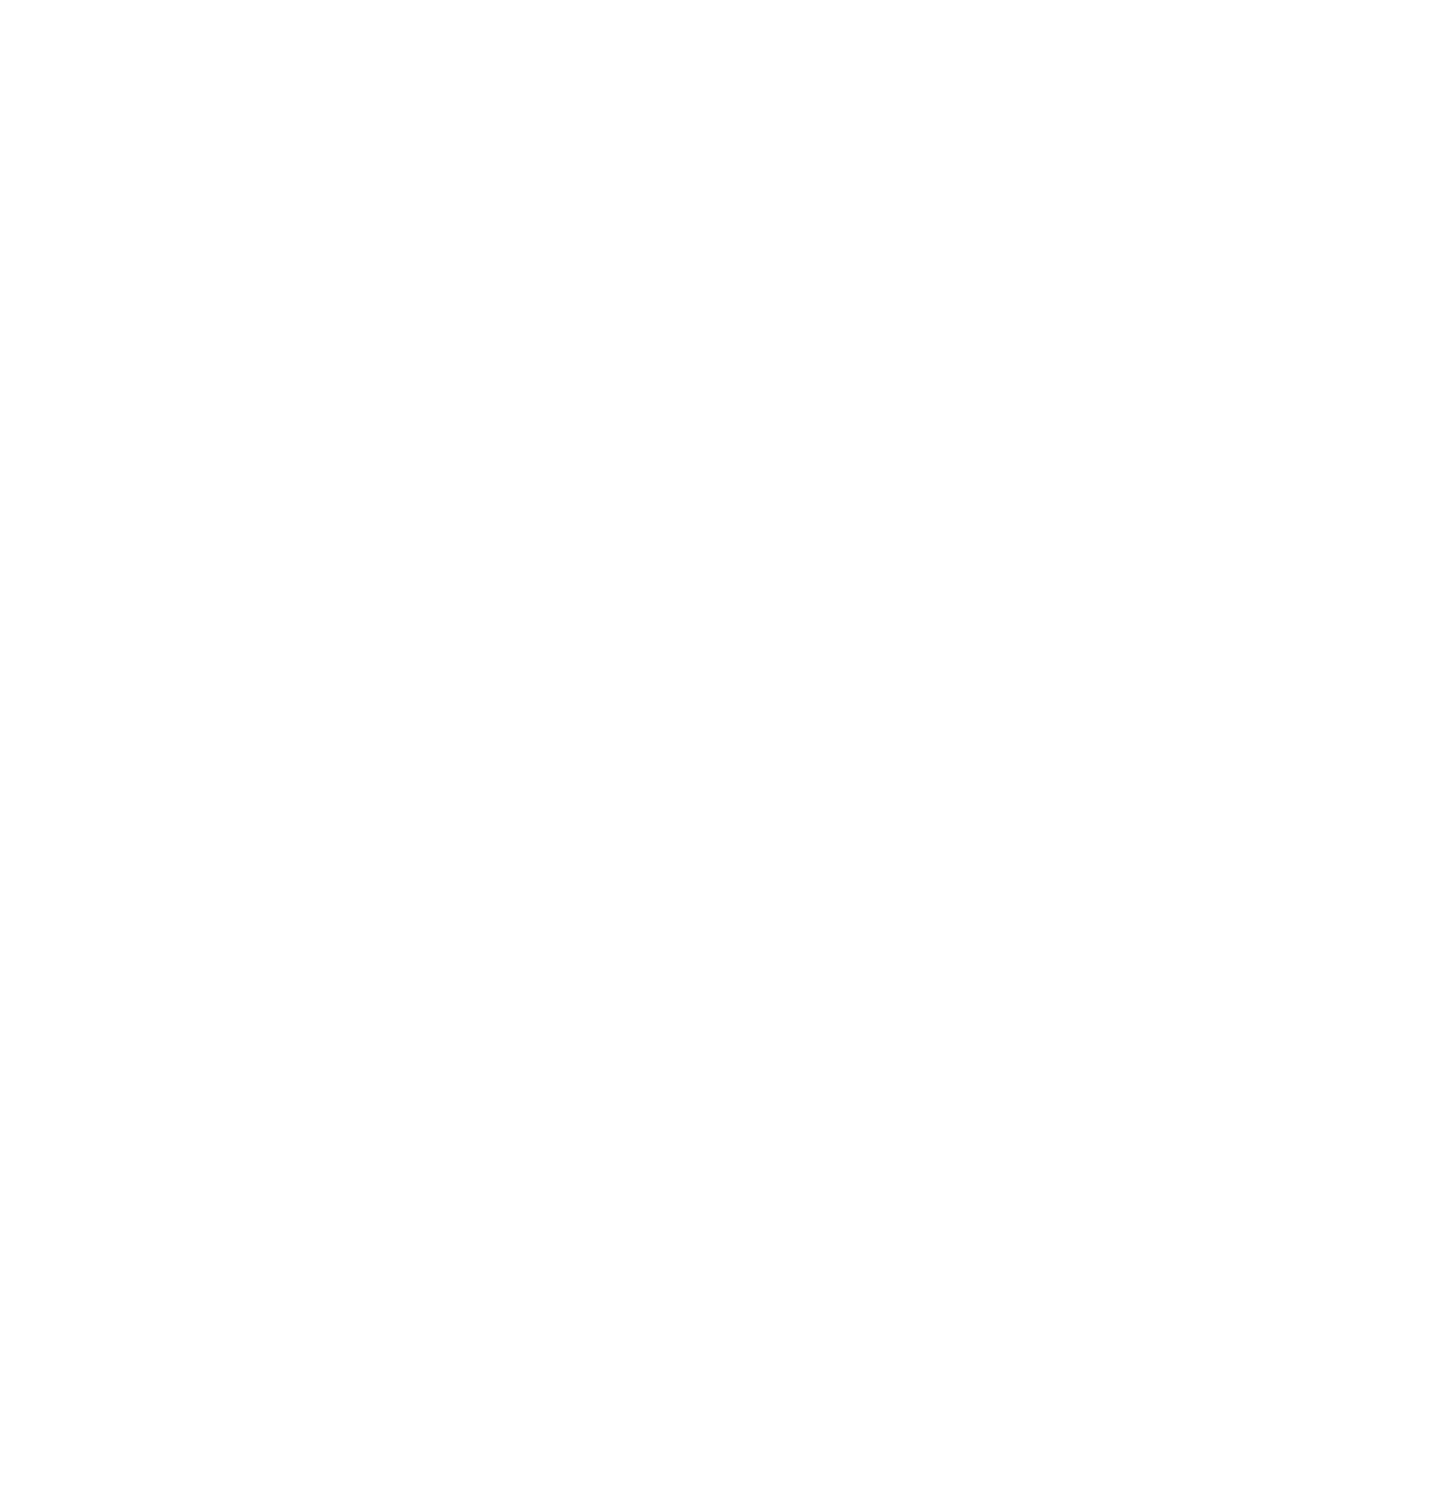 Makkah Construction & Development logo pour fonds sombres (PNG transparent)